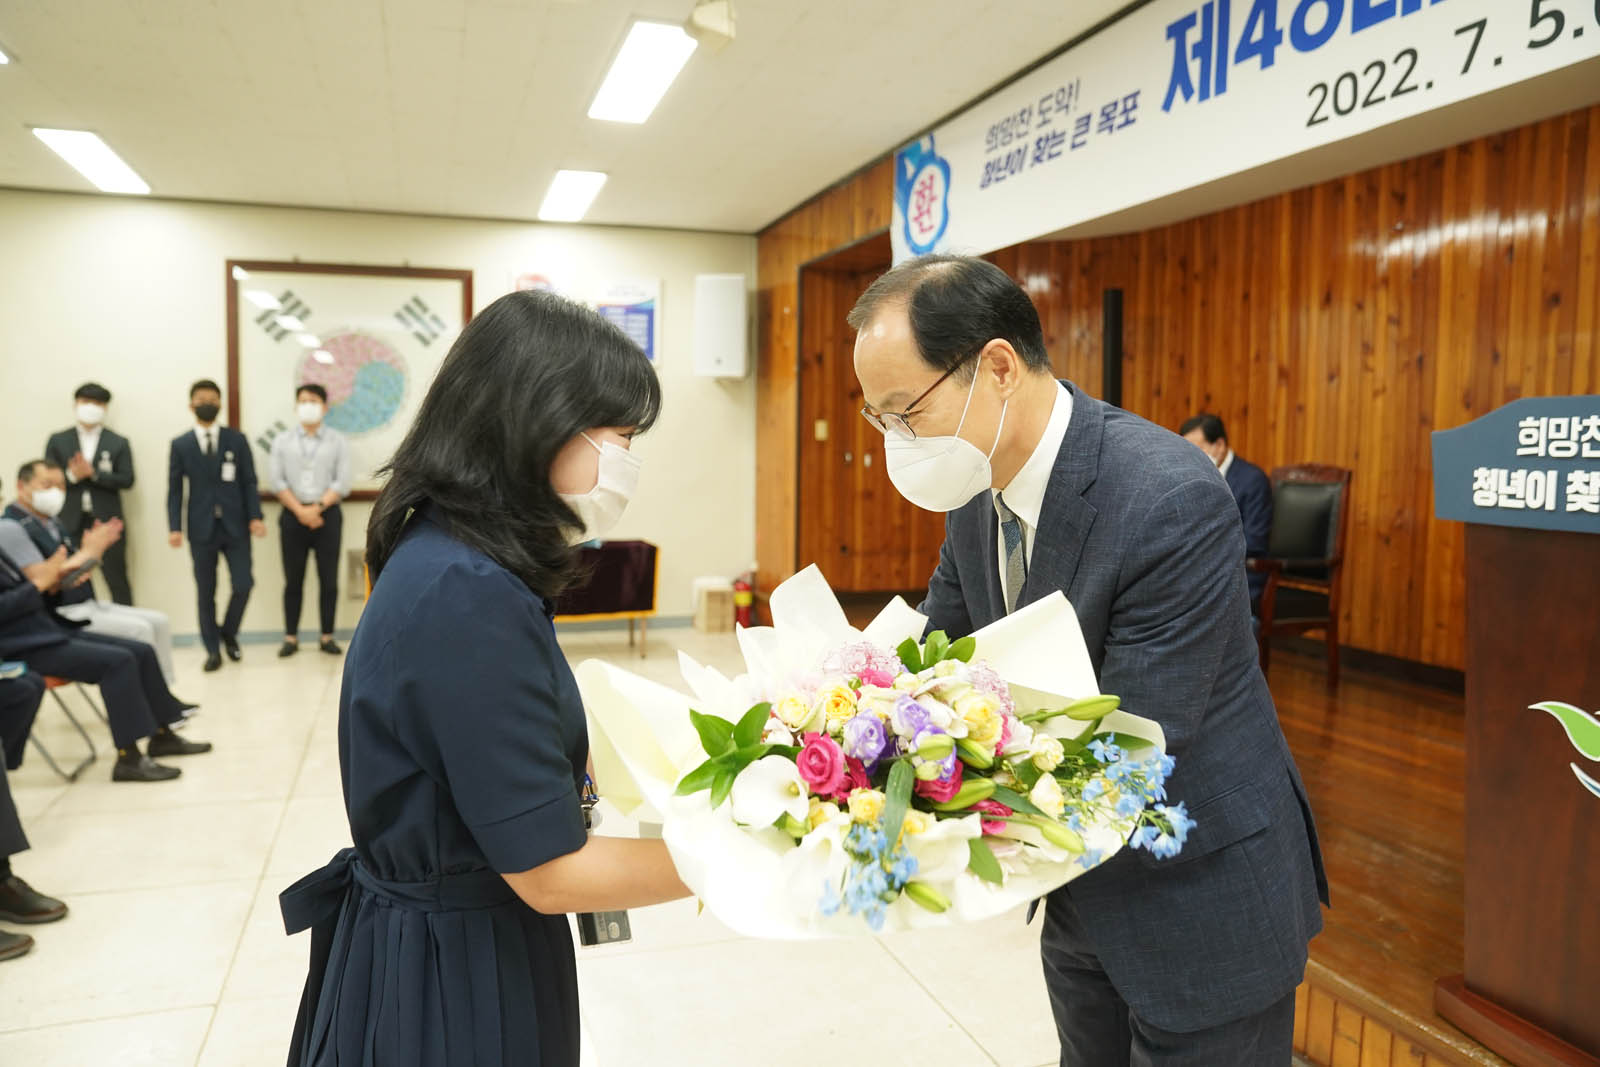 (07.05.회의실) 꽃다발을 받는 강효석 부시장의 모습